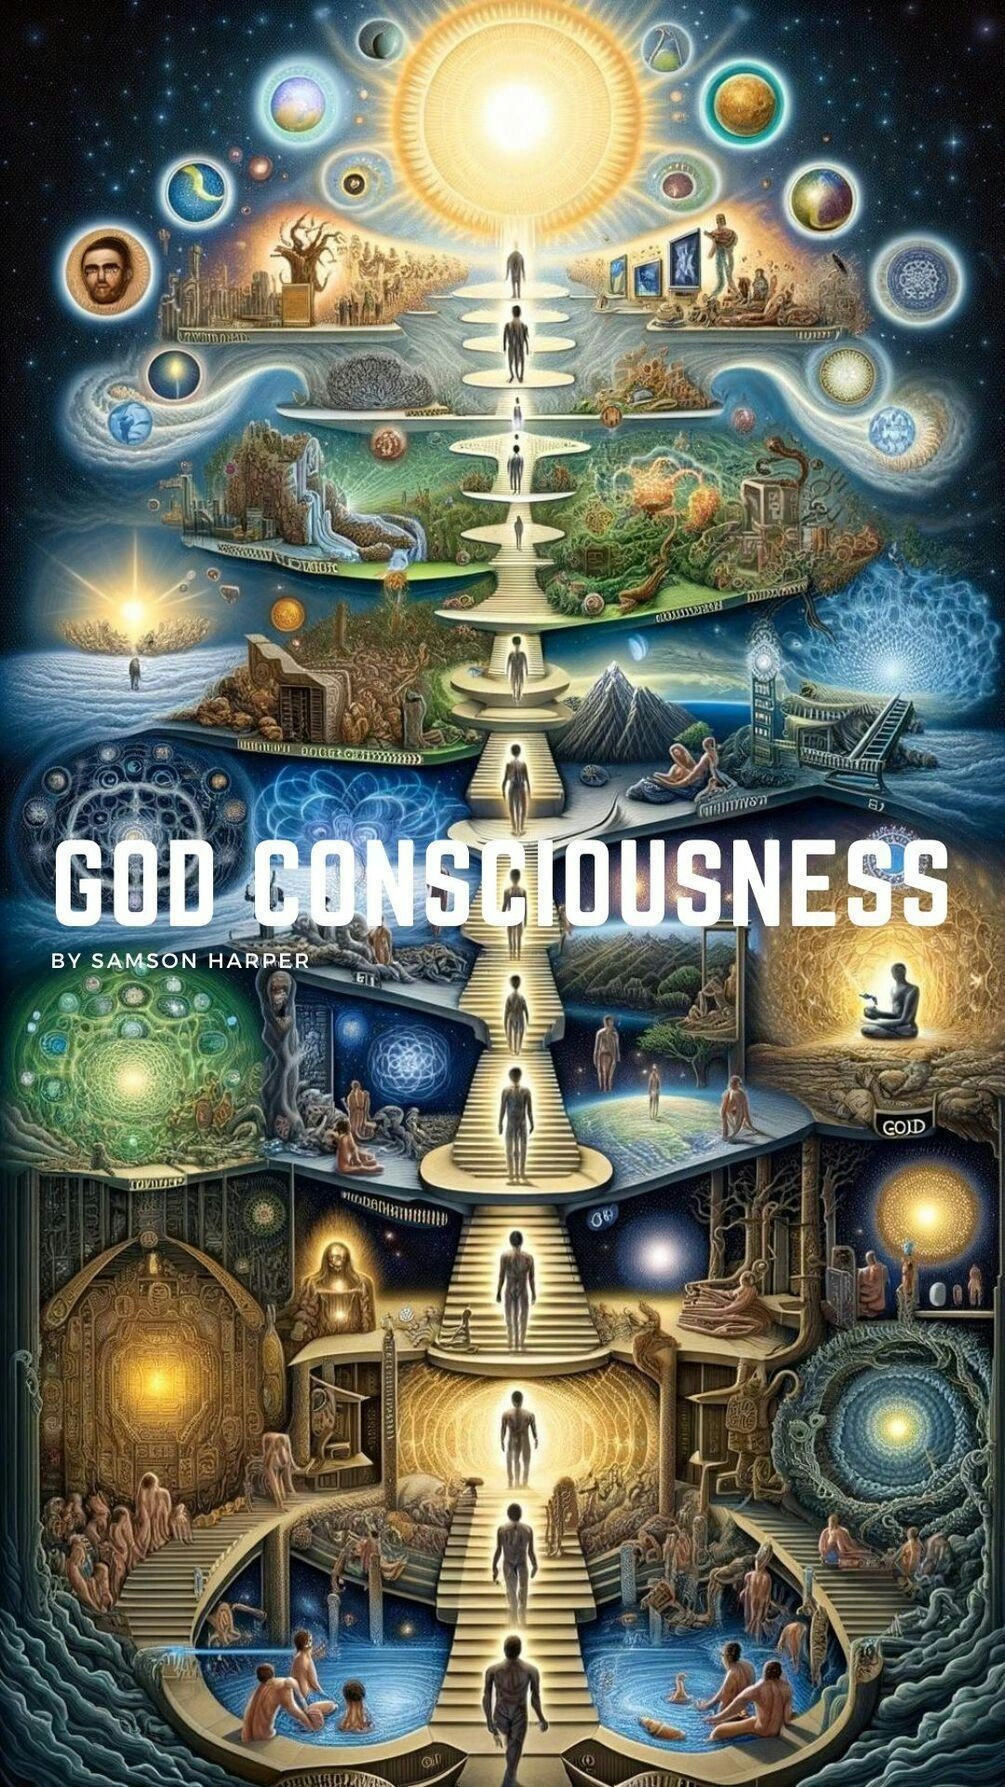 God Consciousness by Samson Harper - A Transformative Spiritual Journey